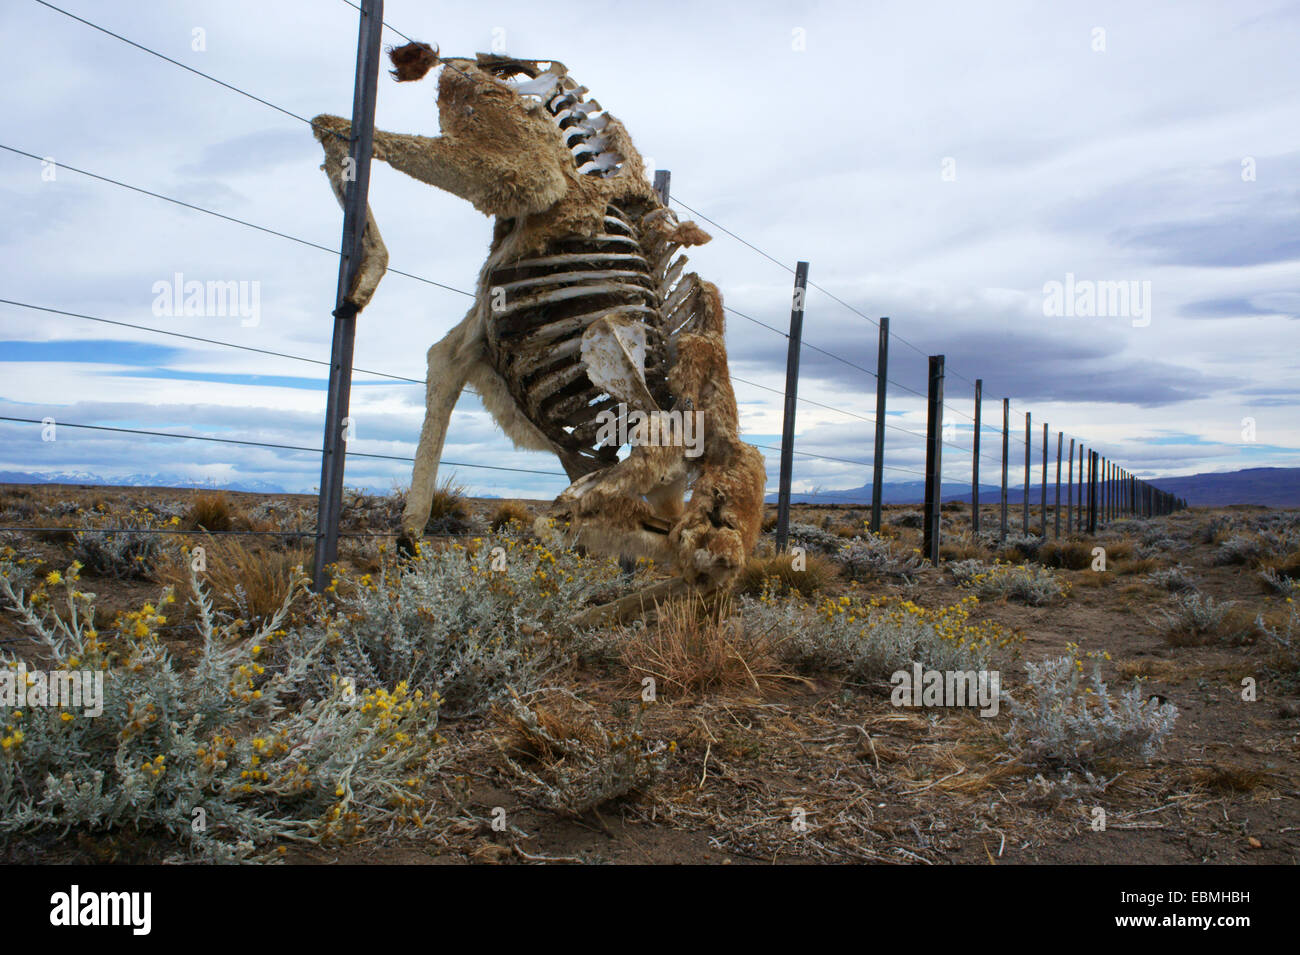 Kadaver toter Guanako verheddert in Zaundraht Ranch, östlich von El Chalten, südlichen Patagonien, Argentinien Stockfoto